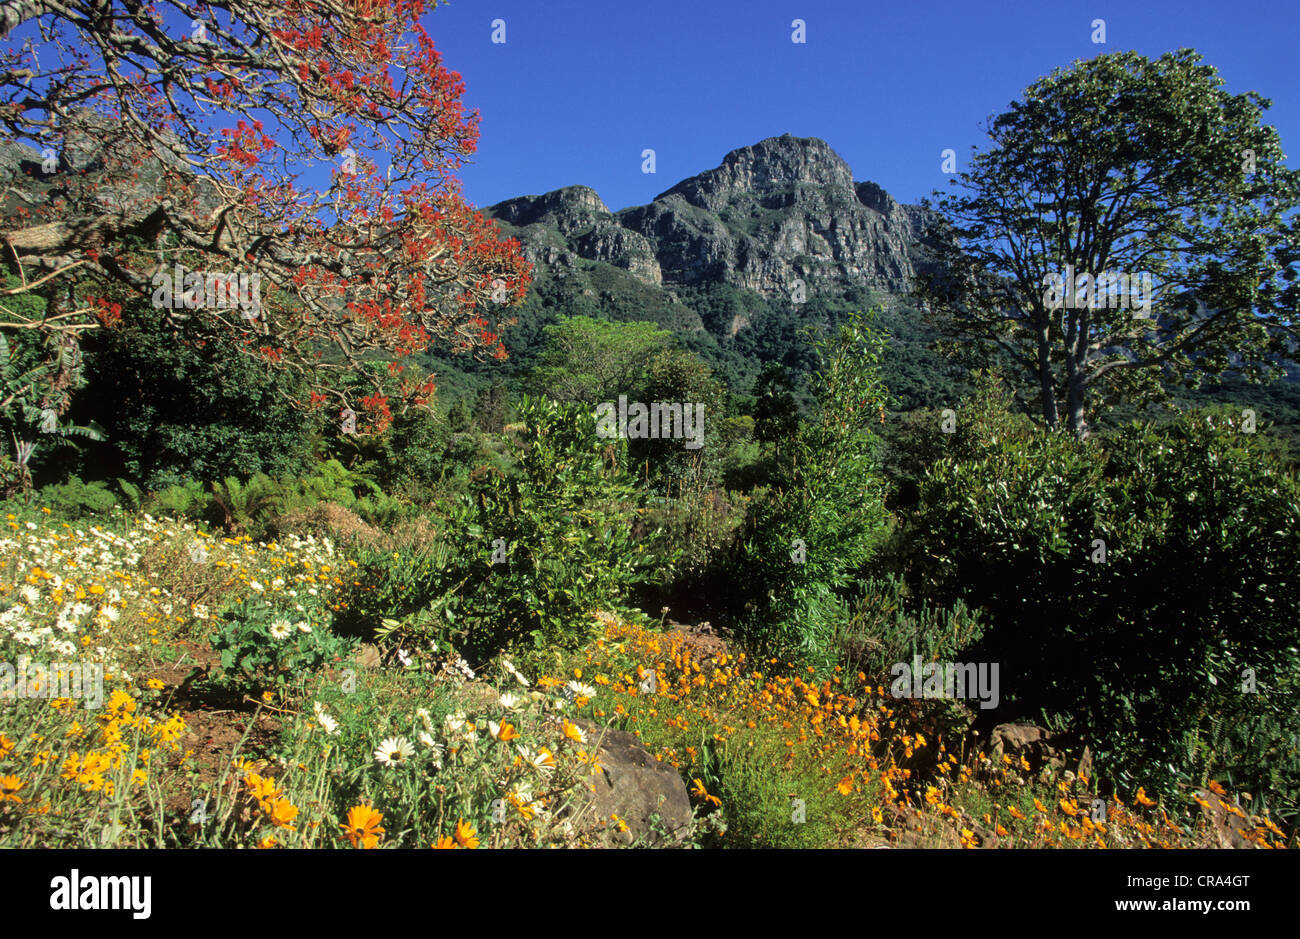 Table Mountain escena con vegetación de fynbos. gargens botánico Kirstenbosch, Cape Town, Sudáfrica Foto de stock